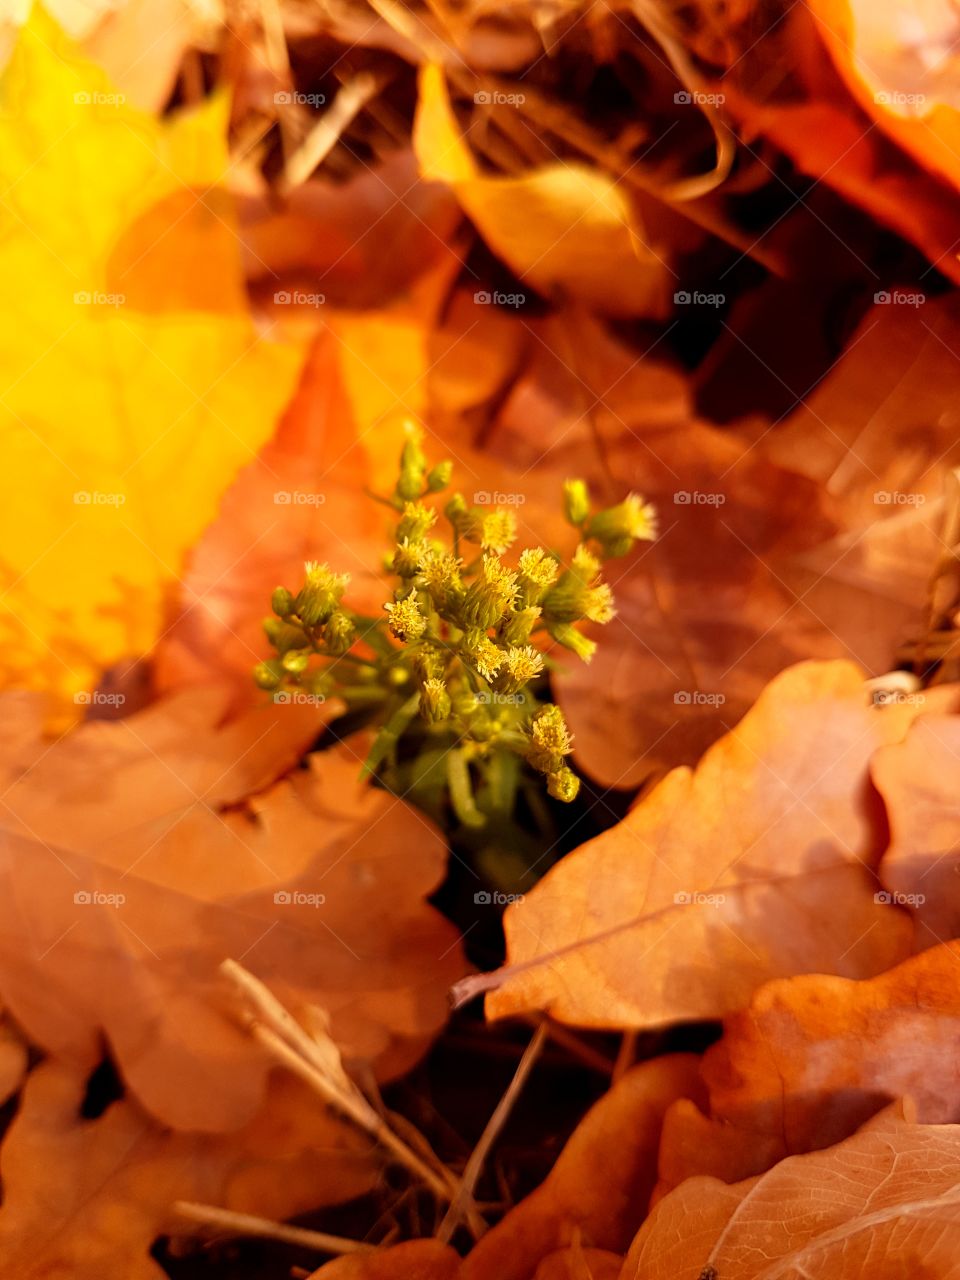 Lost flower in autumn